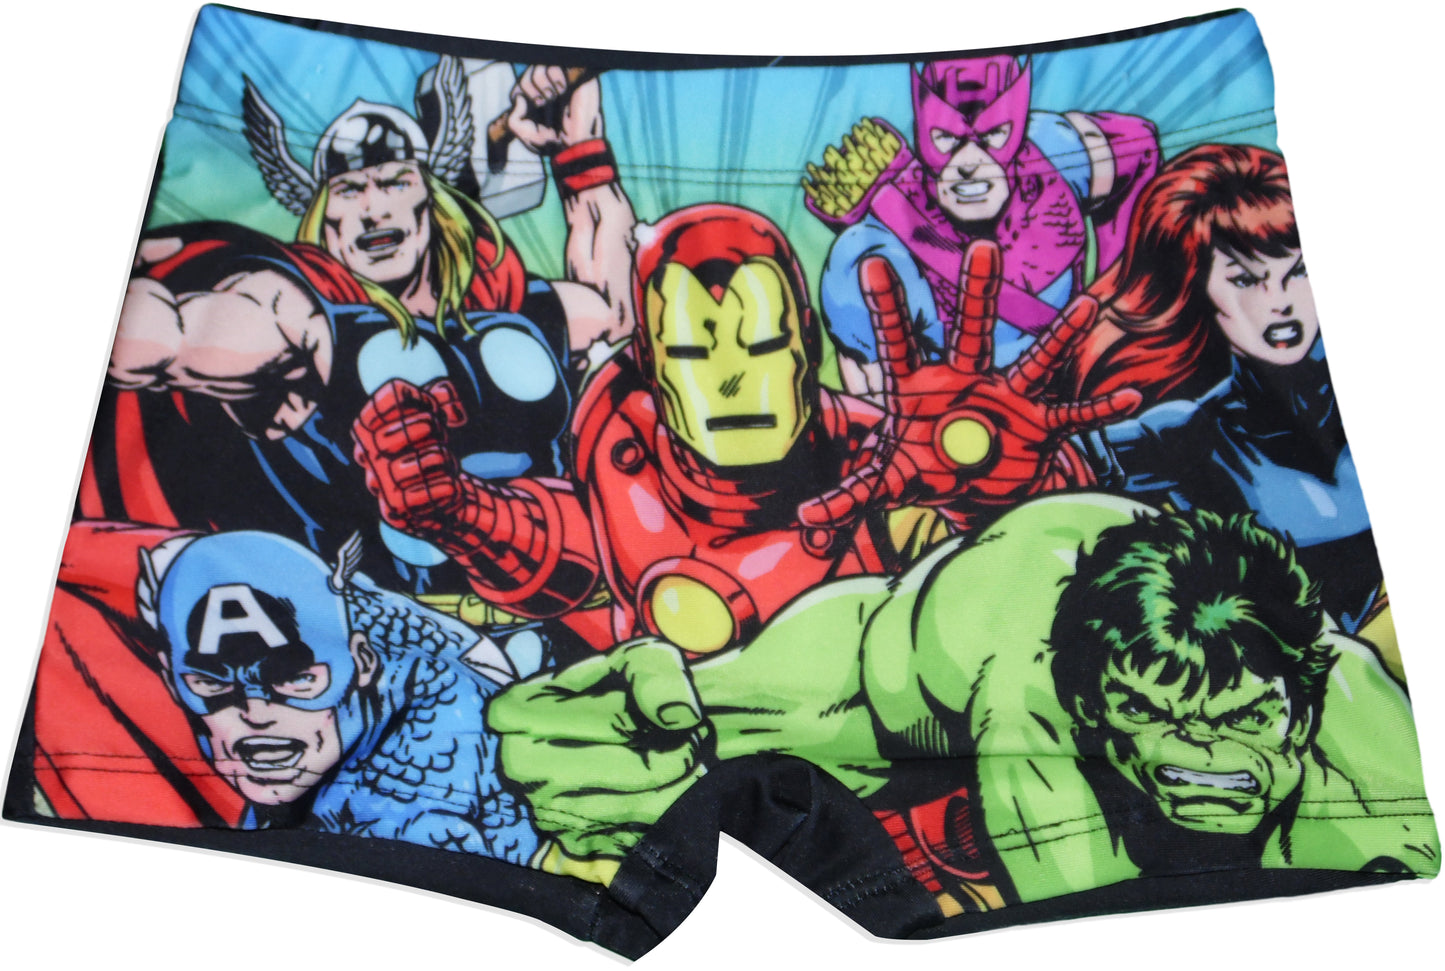 Marvel Avengers Swim Shorts for Boys